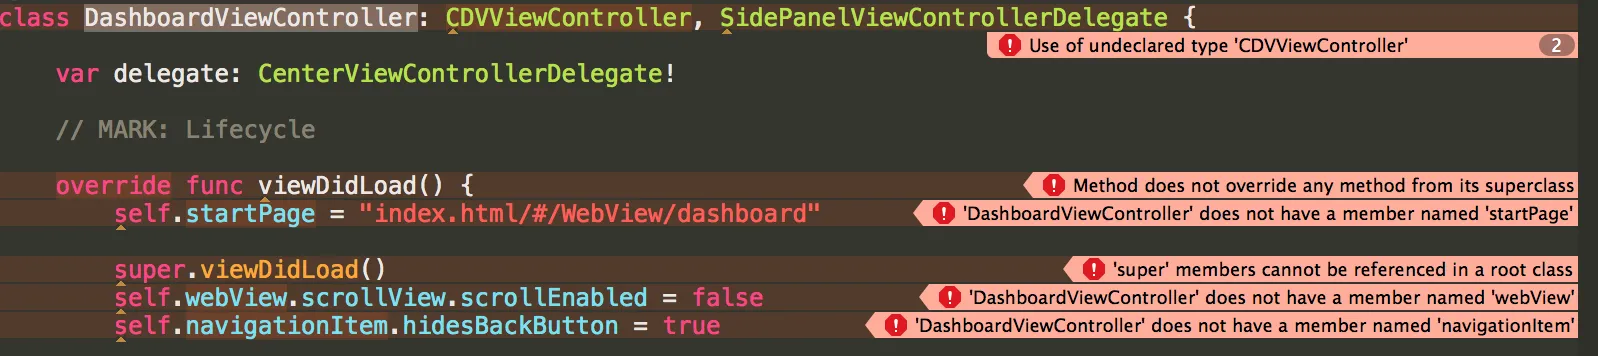 xcode swift errors